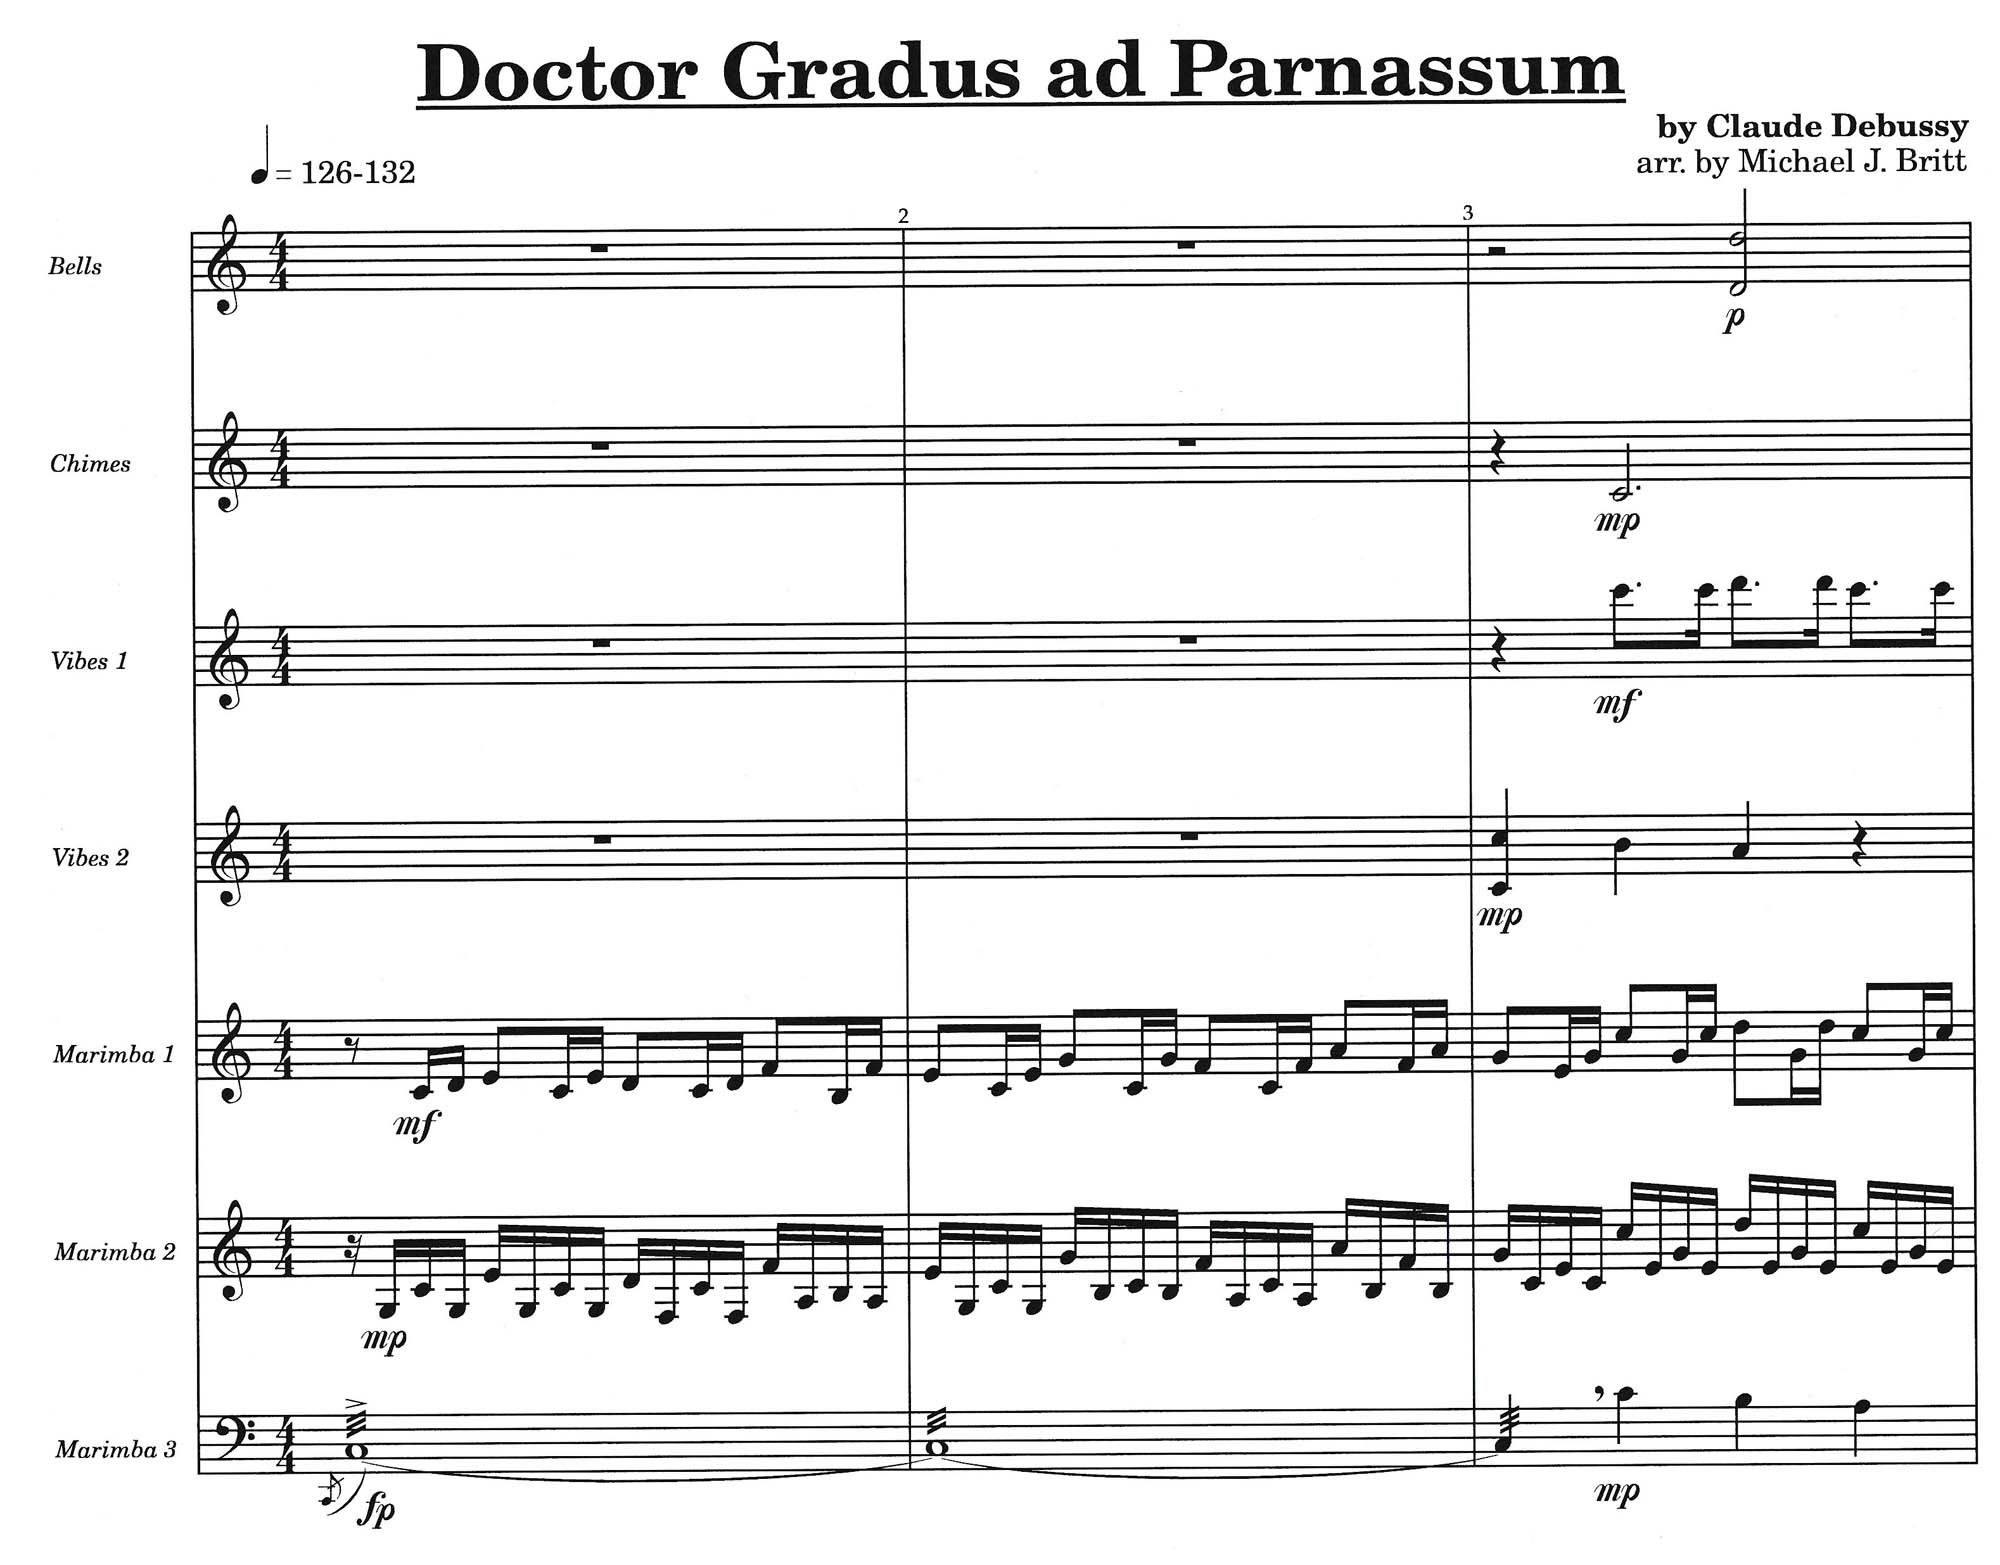 Dr. Gradus ad Parnassum